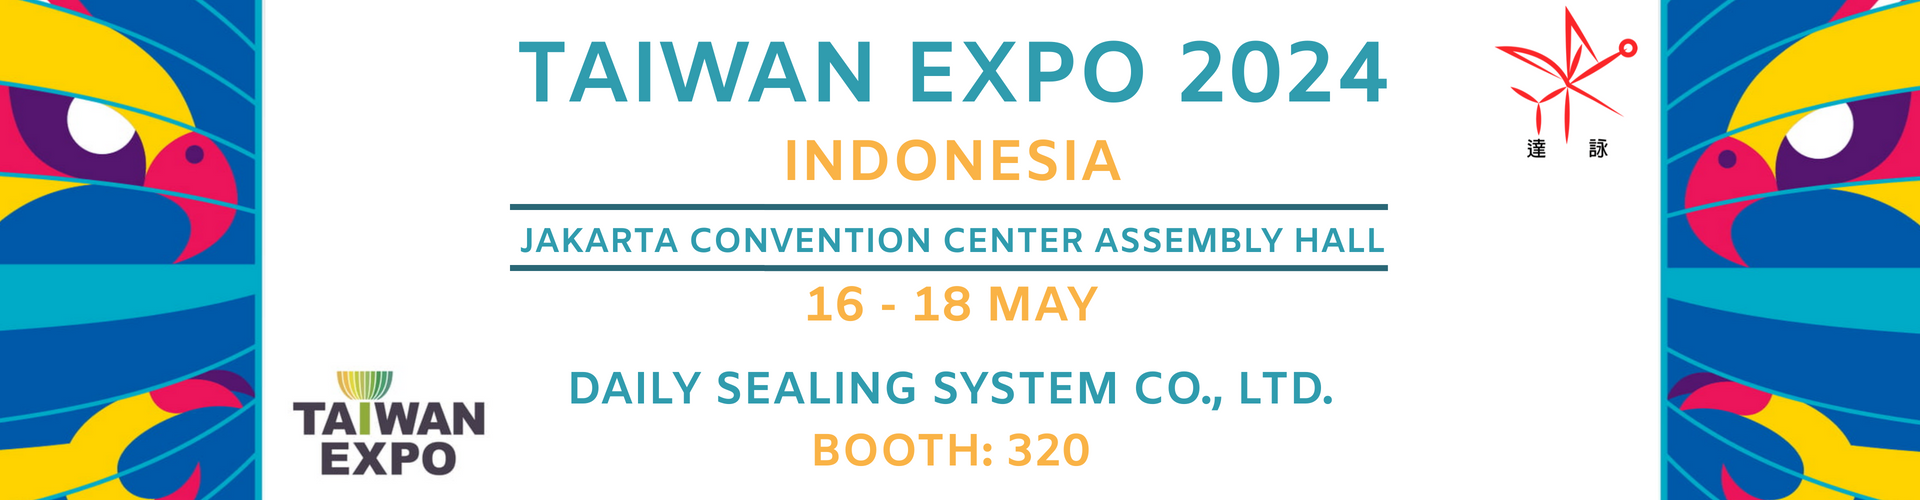 TAIWAN EXPO 2024 INDONESIA